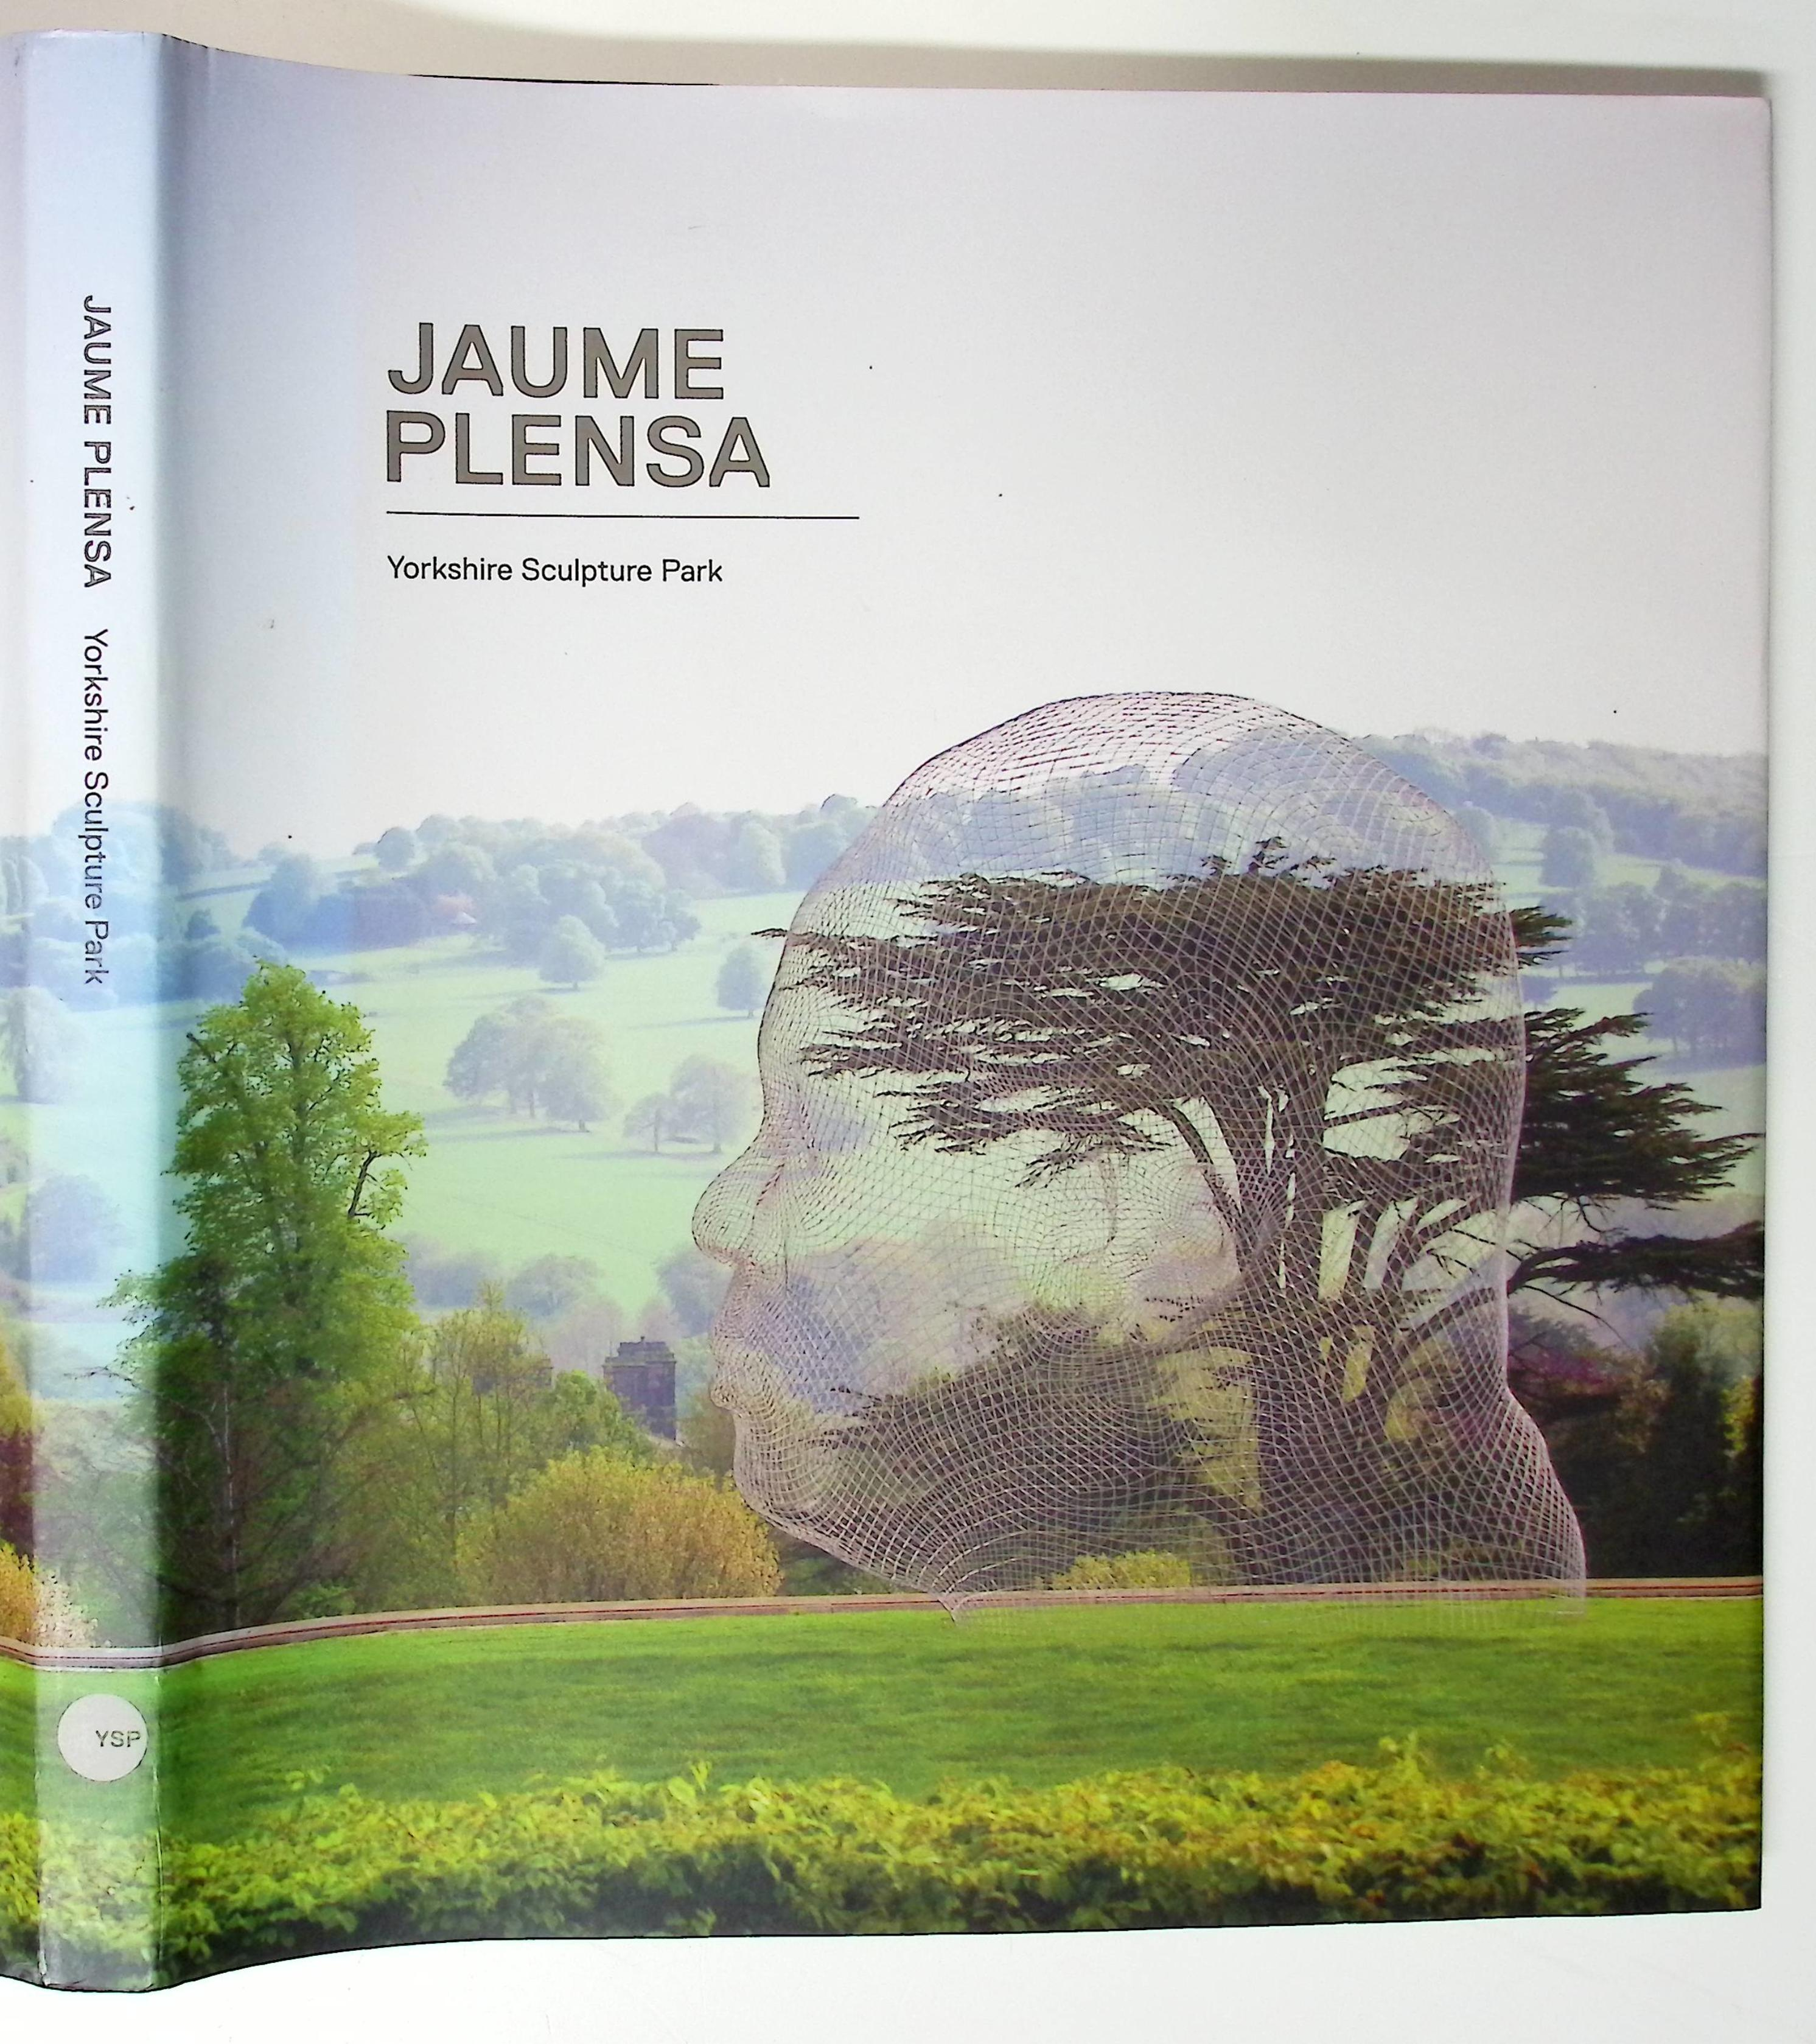 Jaume Plensa. Yorkshire Sculpture Park. Signed copy.